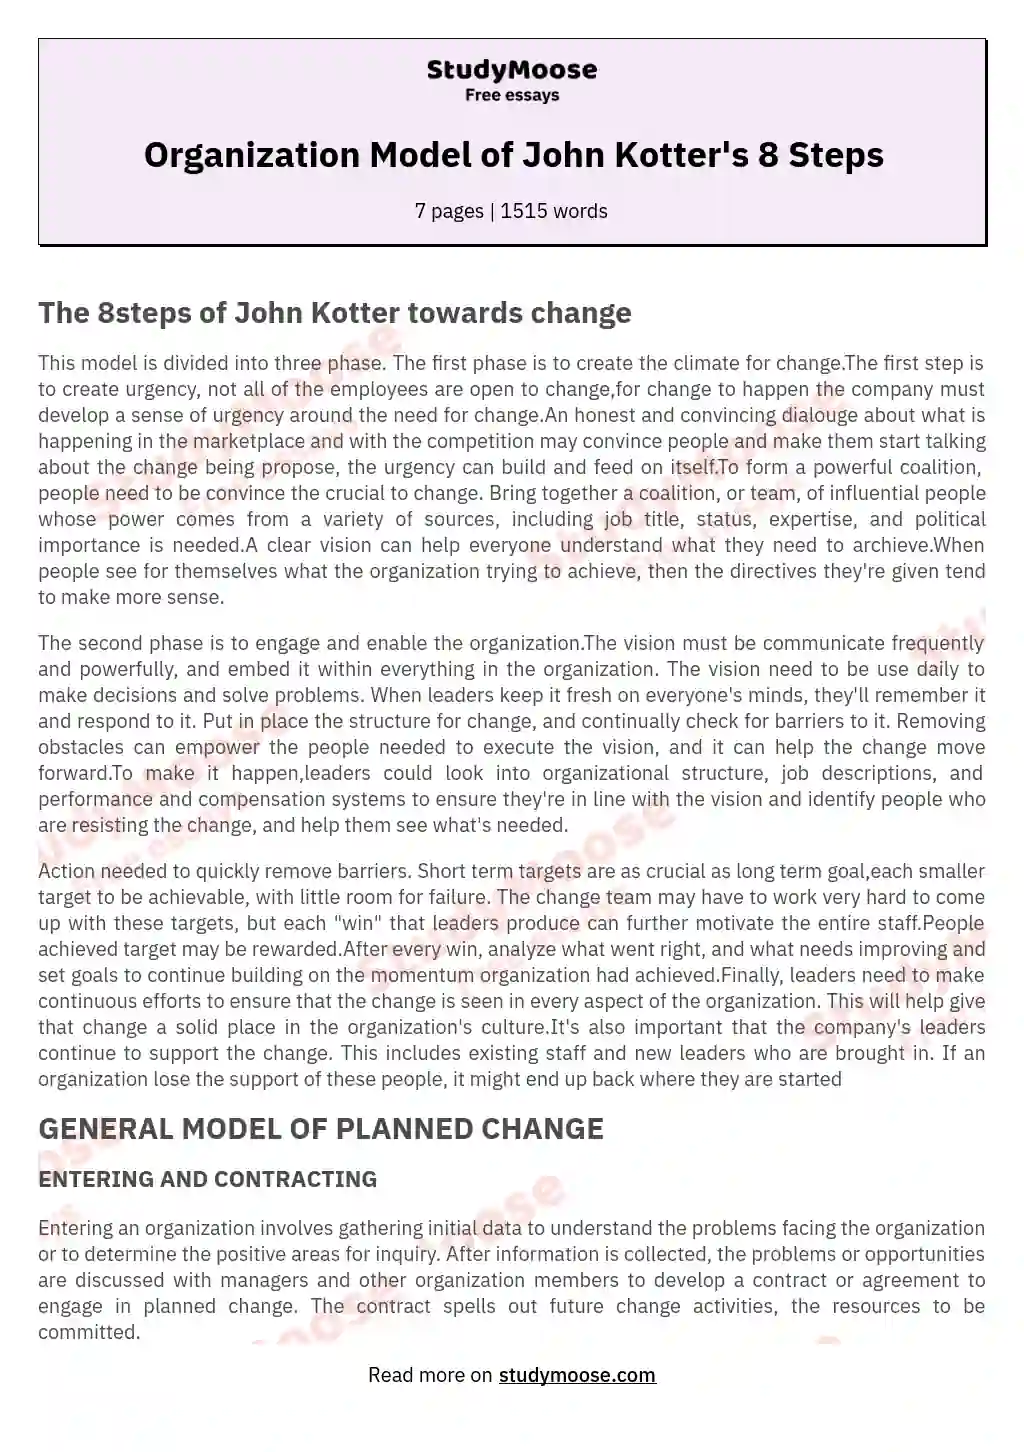 Organization Model of John Kotter's 8 Steps